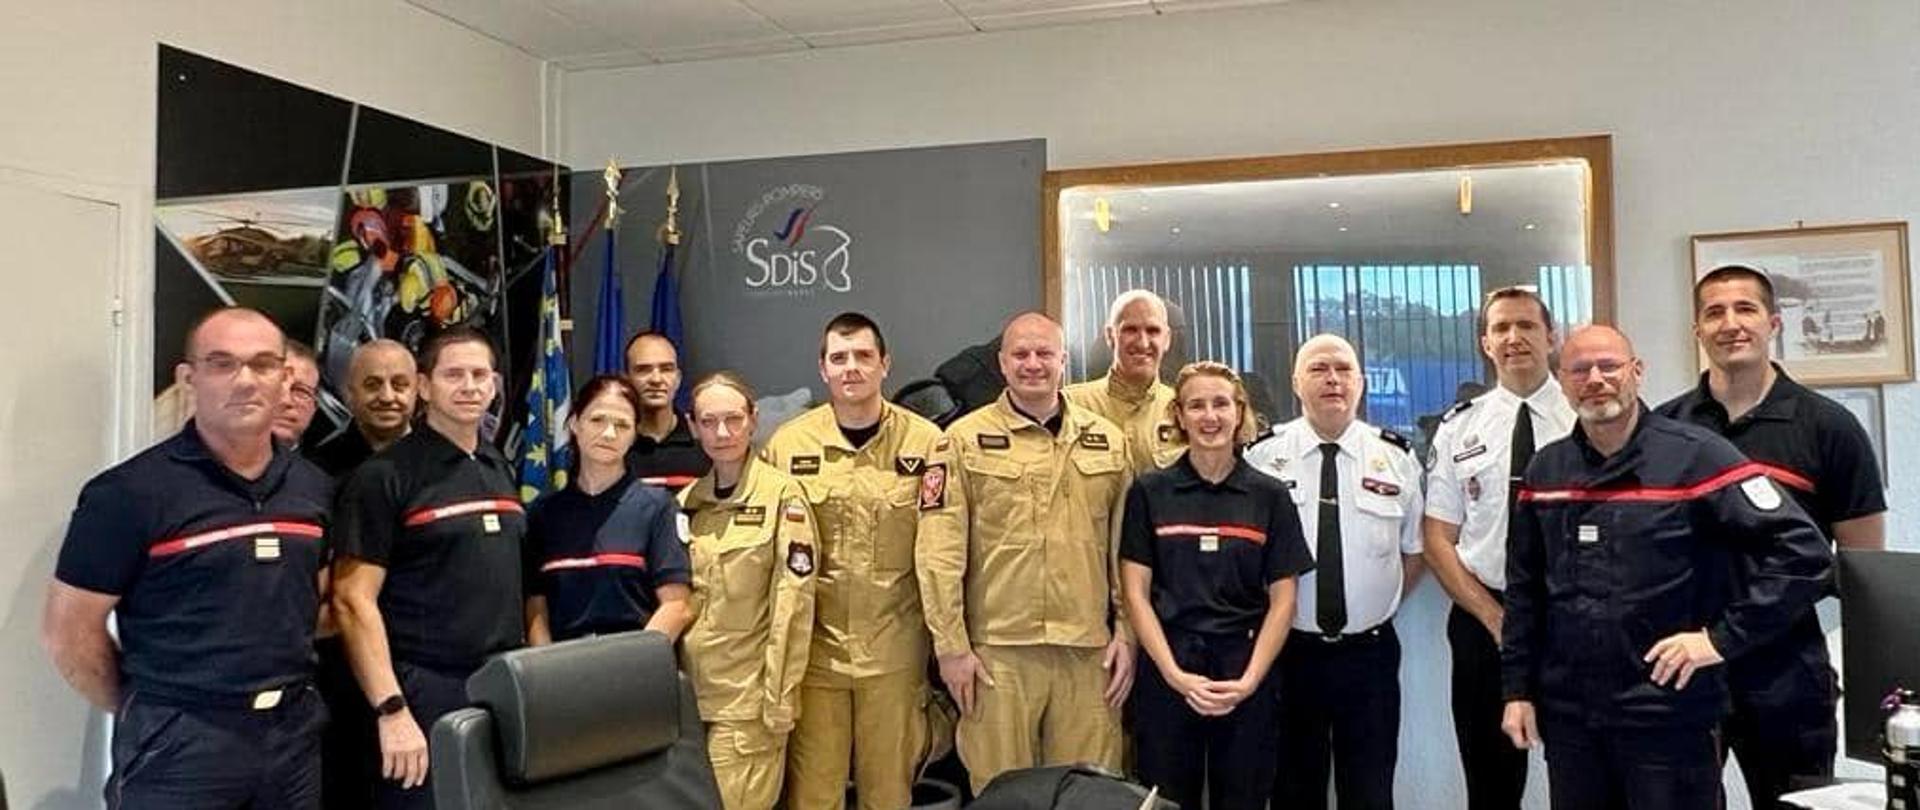 Grupa strażaków polskich i francuskich w mundurach stoi w biurze , na drzwiach napis SDiS